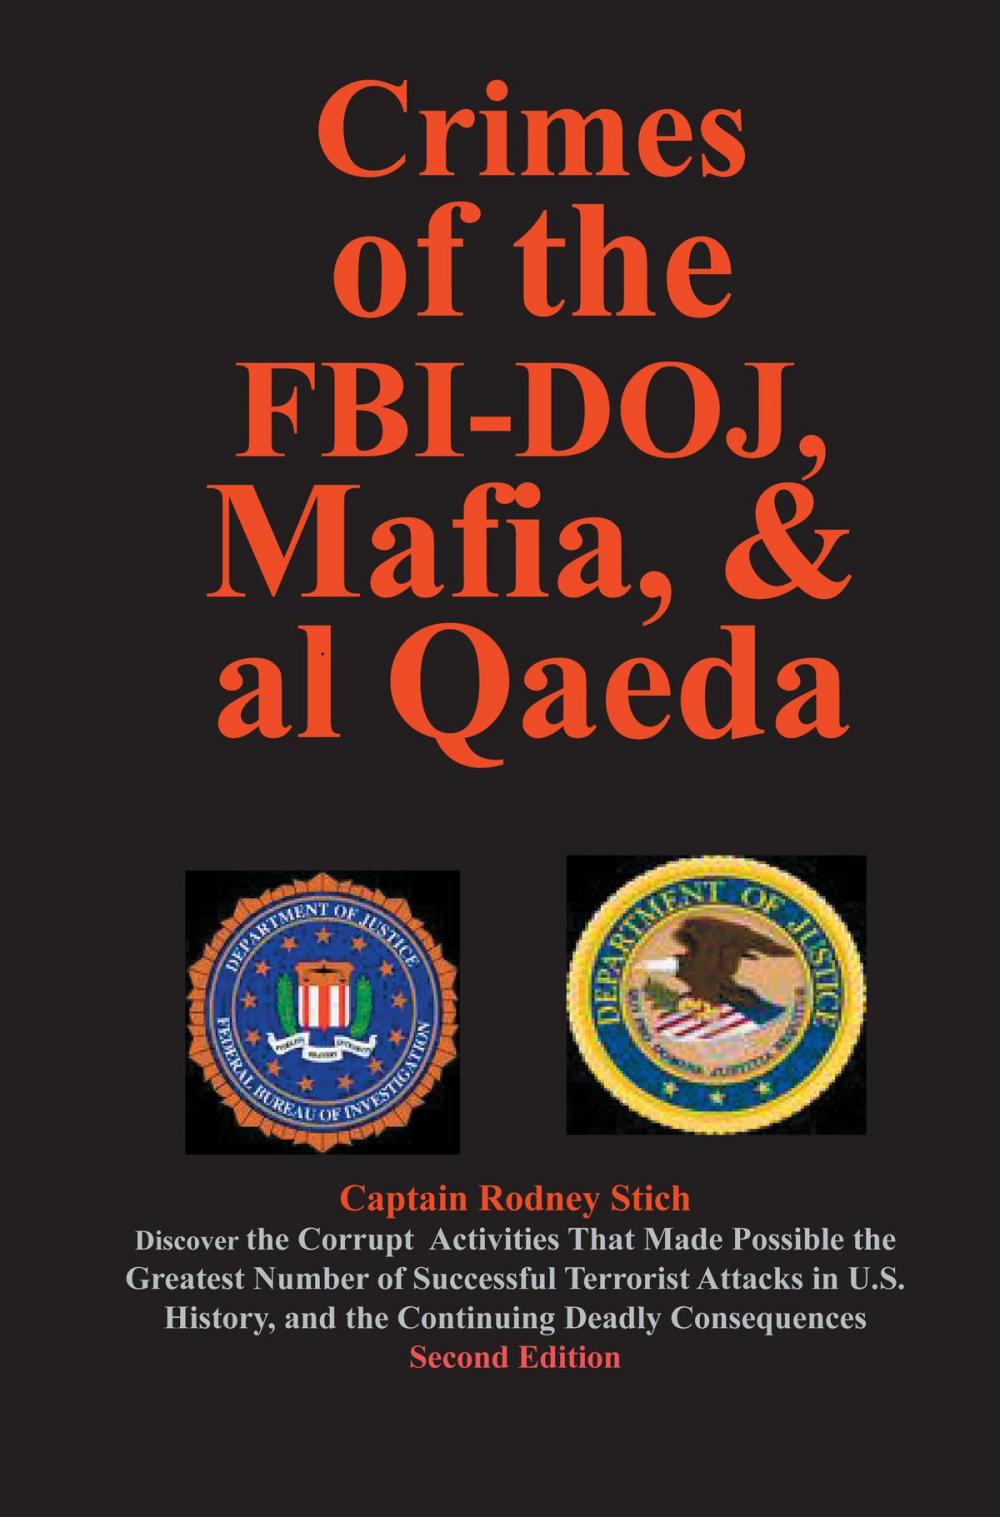 Big bigCover of Crimes of the FBI-DOJ, Mafia, and al Qaeda